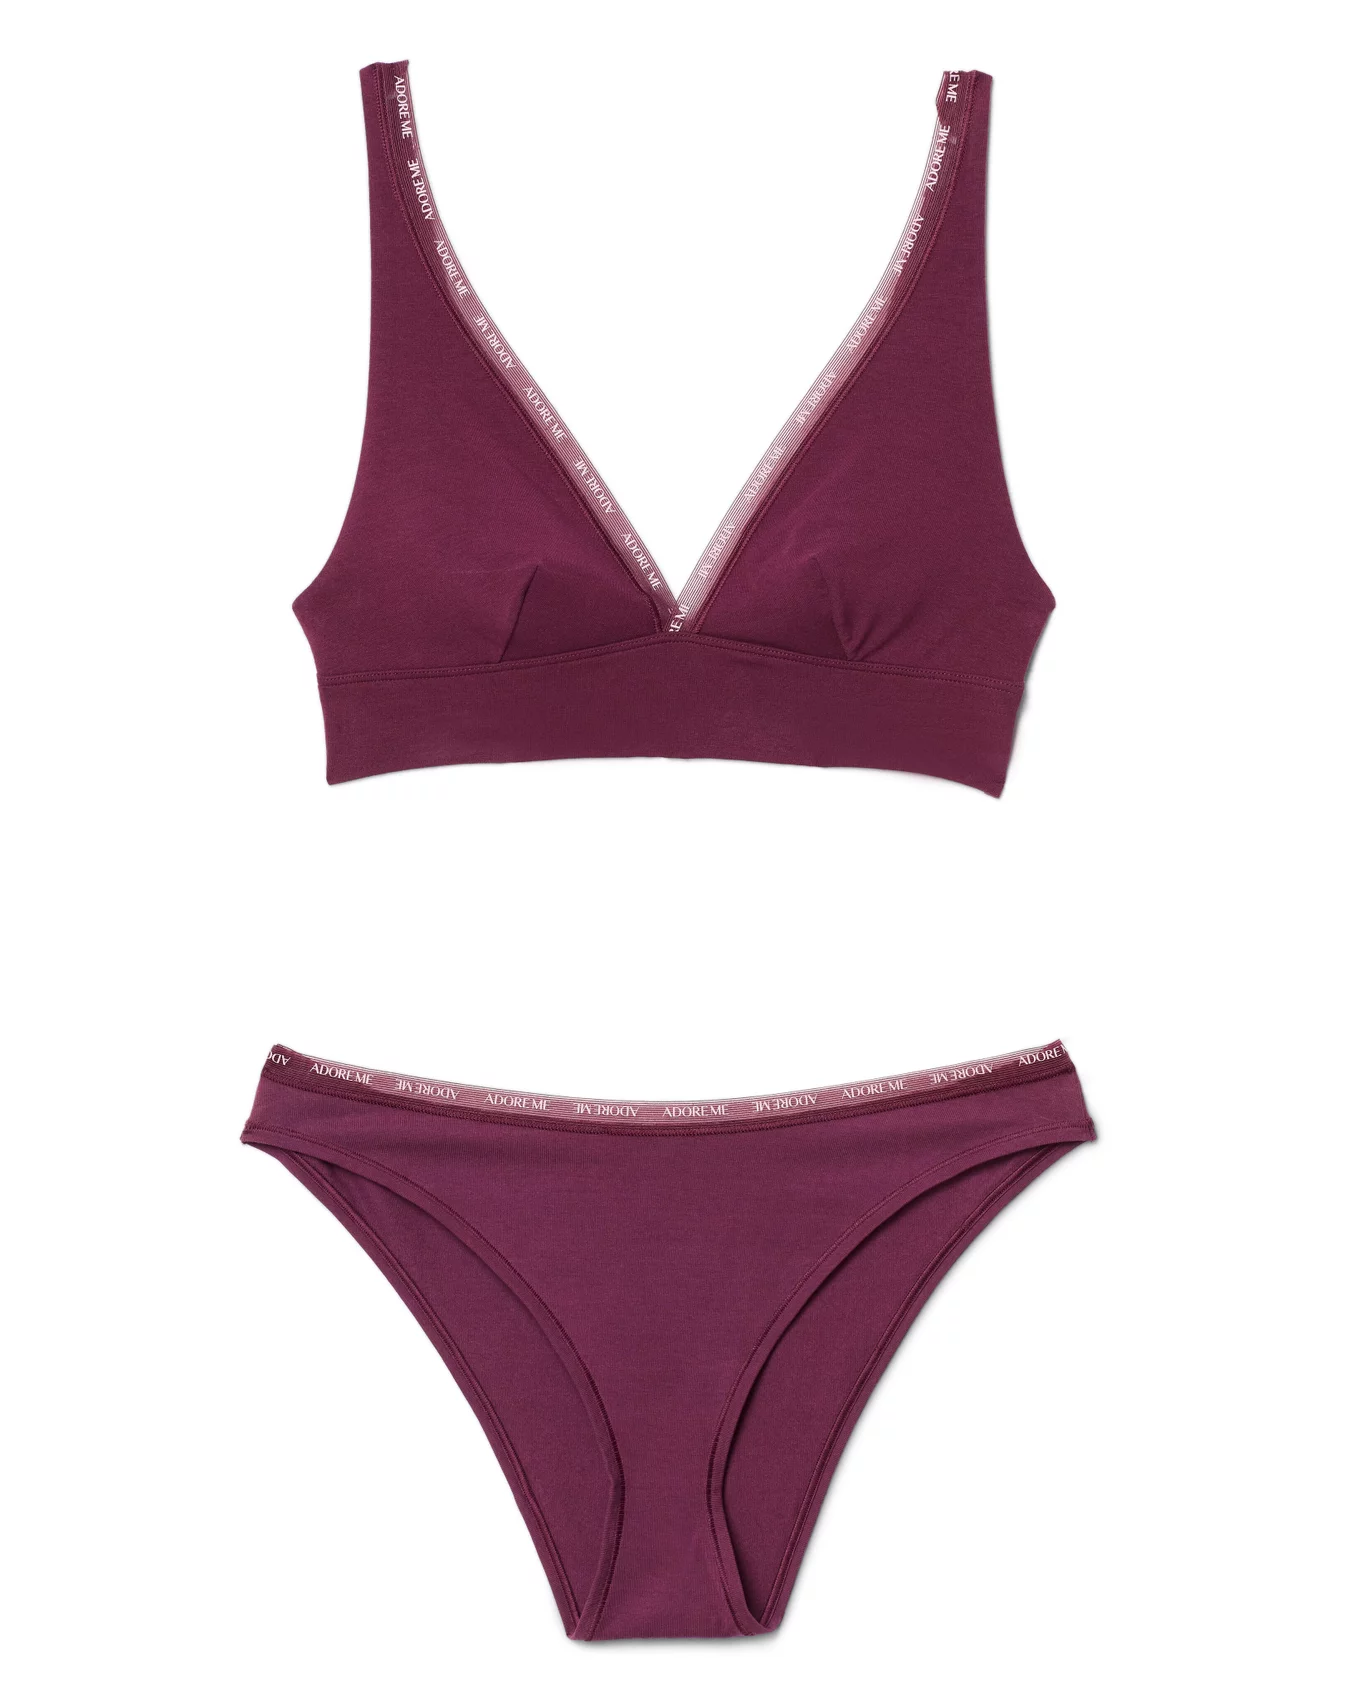 ADORE ME WOMEN'S M/36DD Enny Contour Balconette Bra Panty Set Grape Purple  Lace $27.93 - PicClick